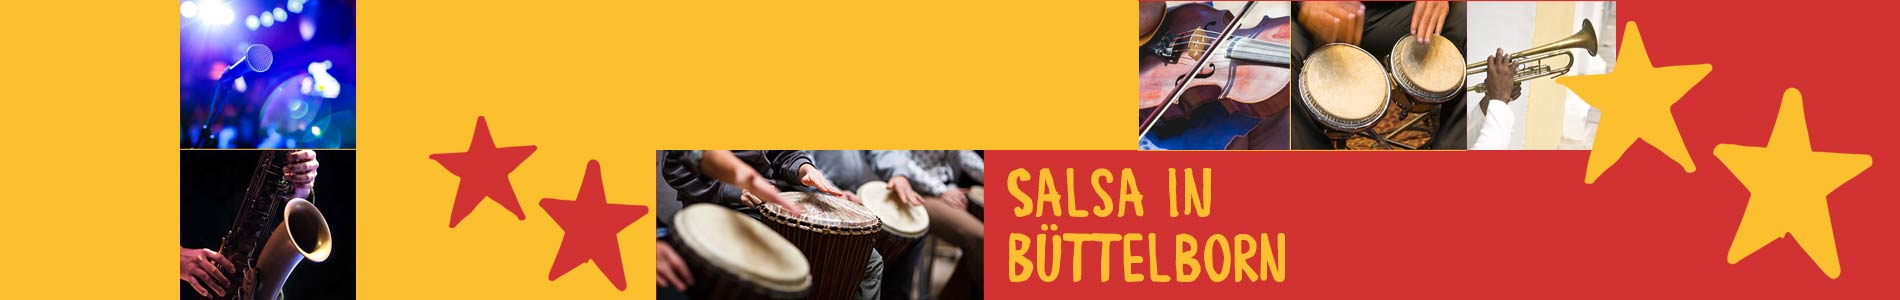 Salsa in Büttelborn – Salsa lernen und tanzen, Tanzkurse, Partys, Veranstaltungen